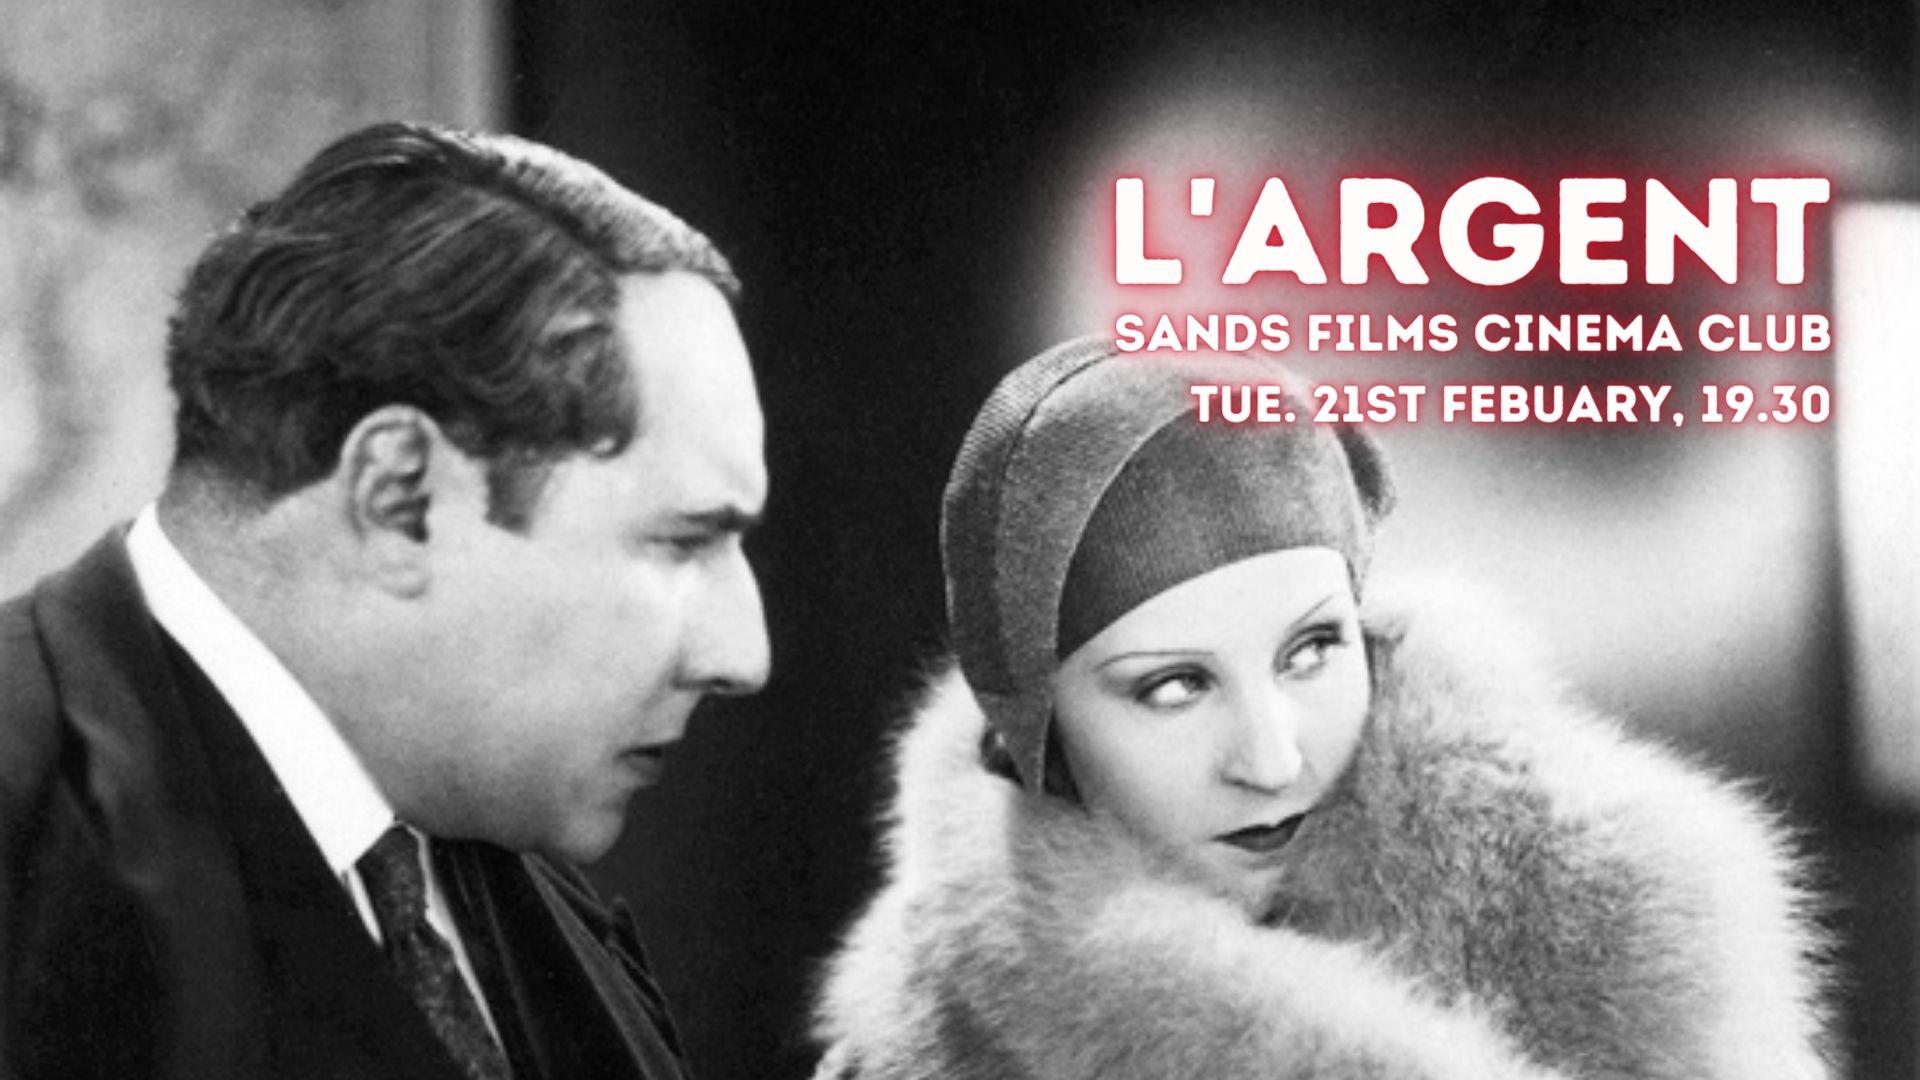 L'Argent (1928): Sands Films Cinema Club online presentation